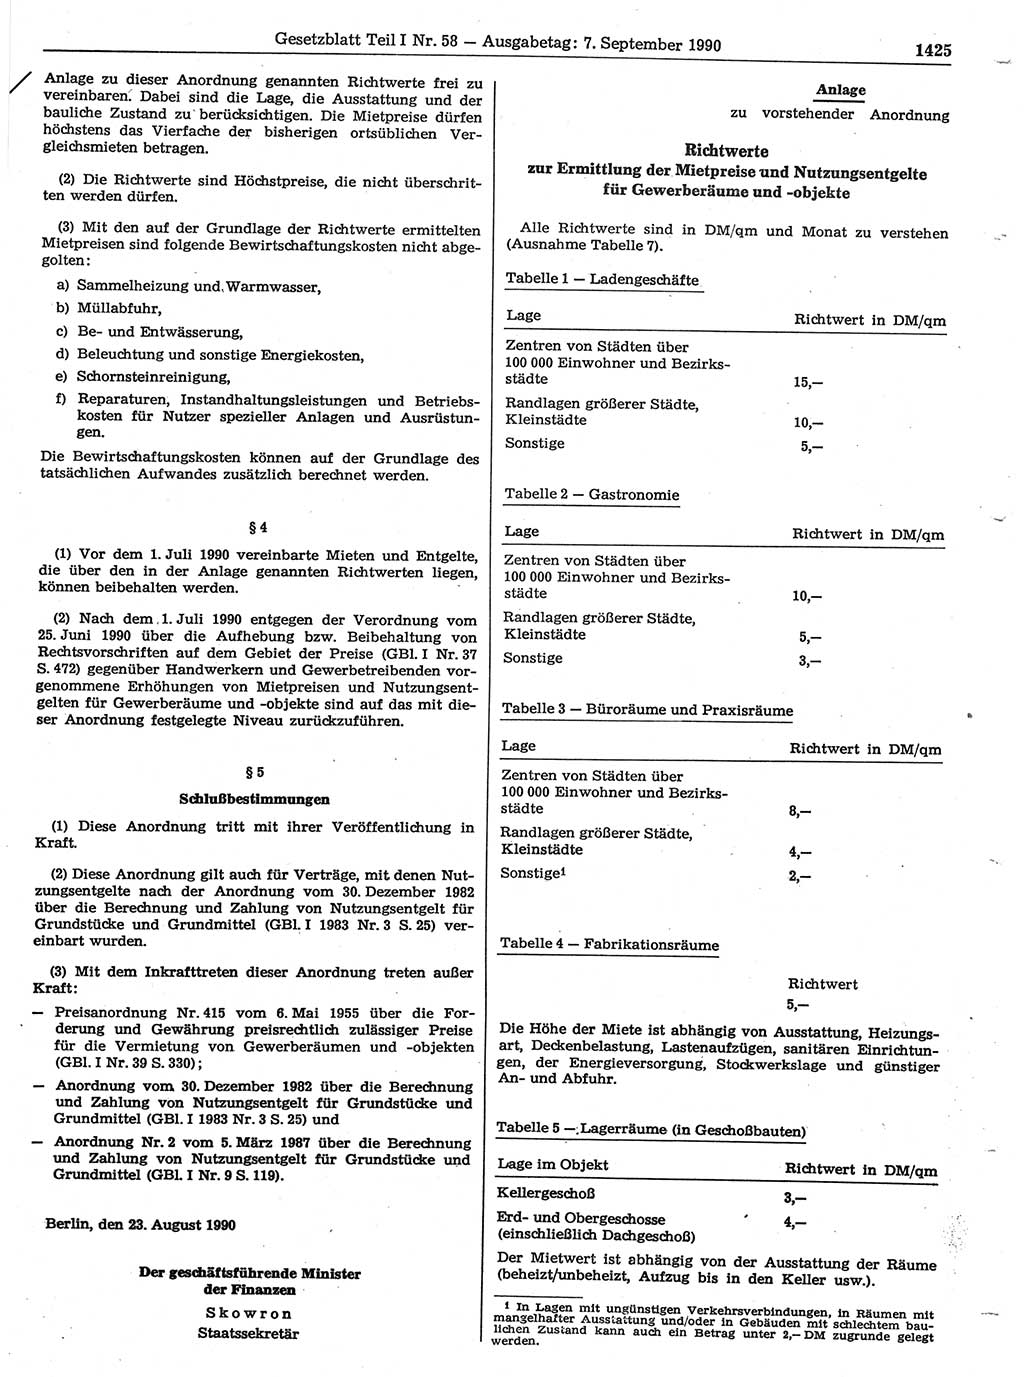 Gesetzblatt (GBl.) der Deutschen Demokratischen Republik (DDR) Teil Ⅰ 1990, Seite 1425 (GBl. DDR Ⅰ 1990, S. 1425)